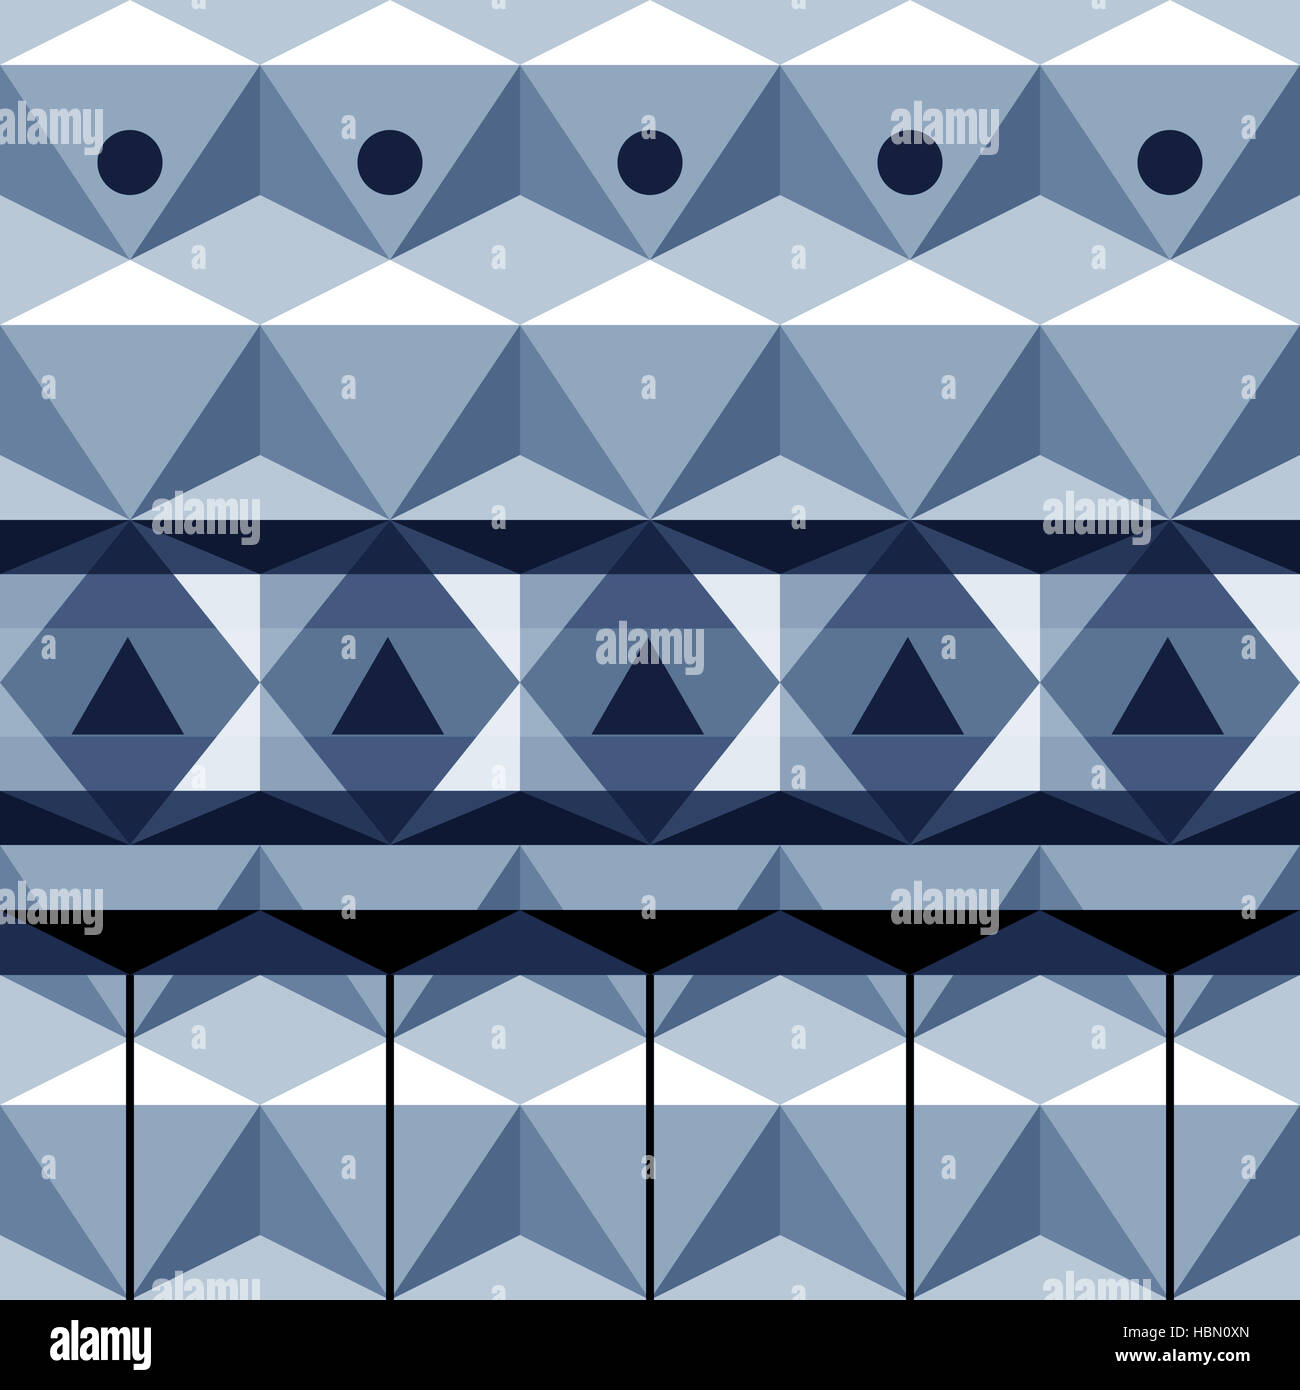 seamless pattern Stock Photo